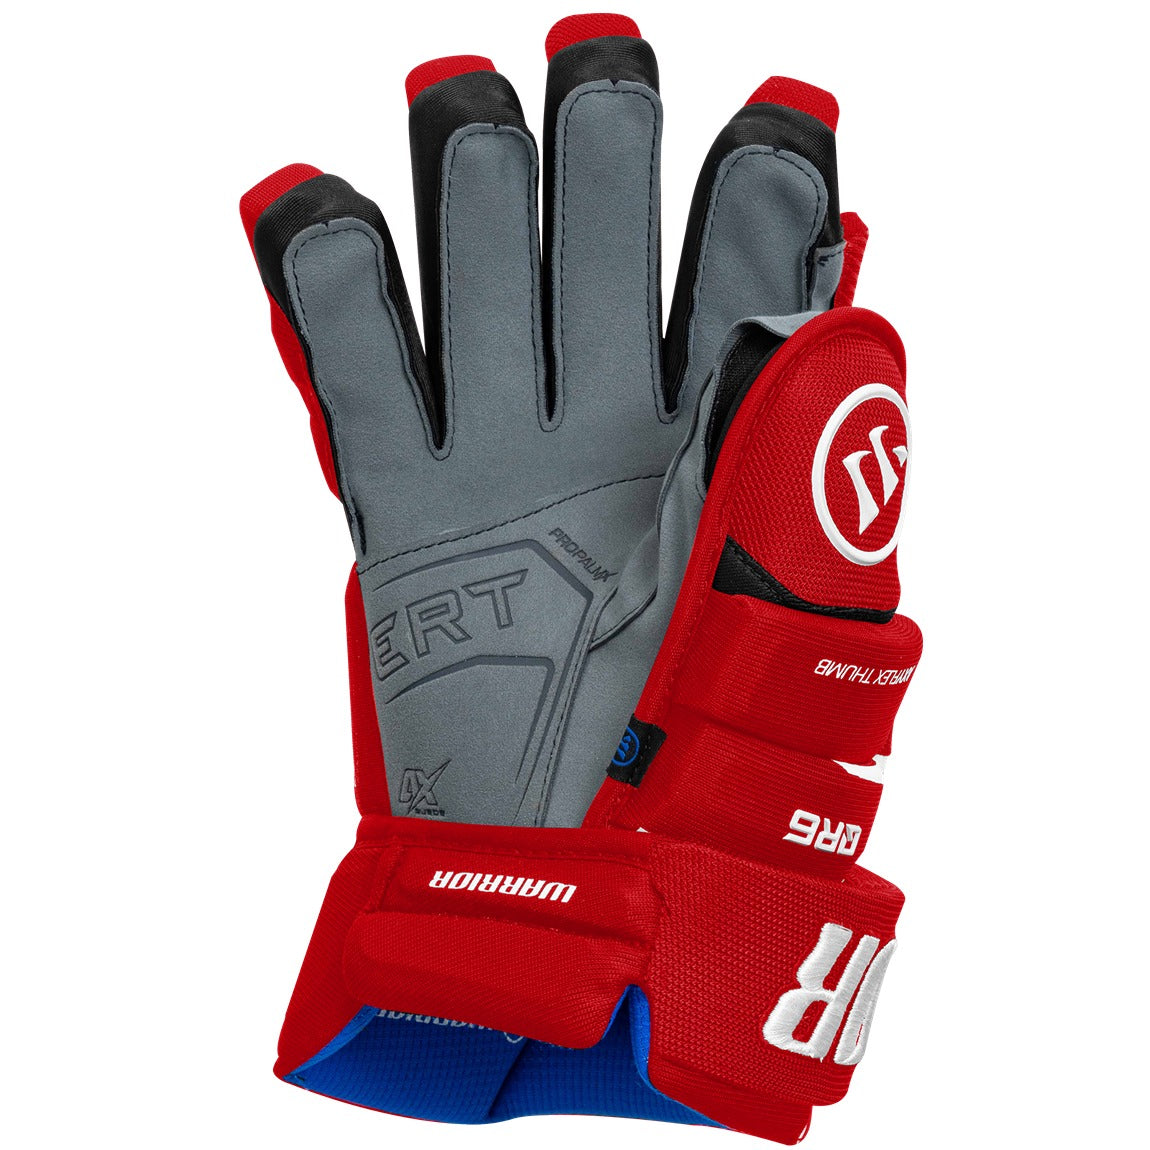 Warrior Covert QR6 Gloves - Senior